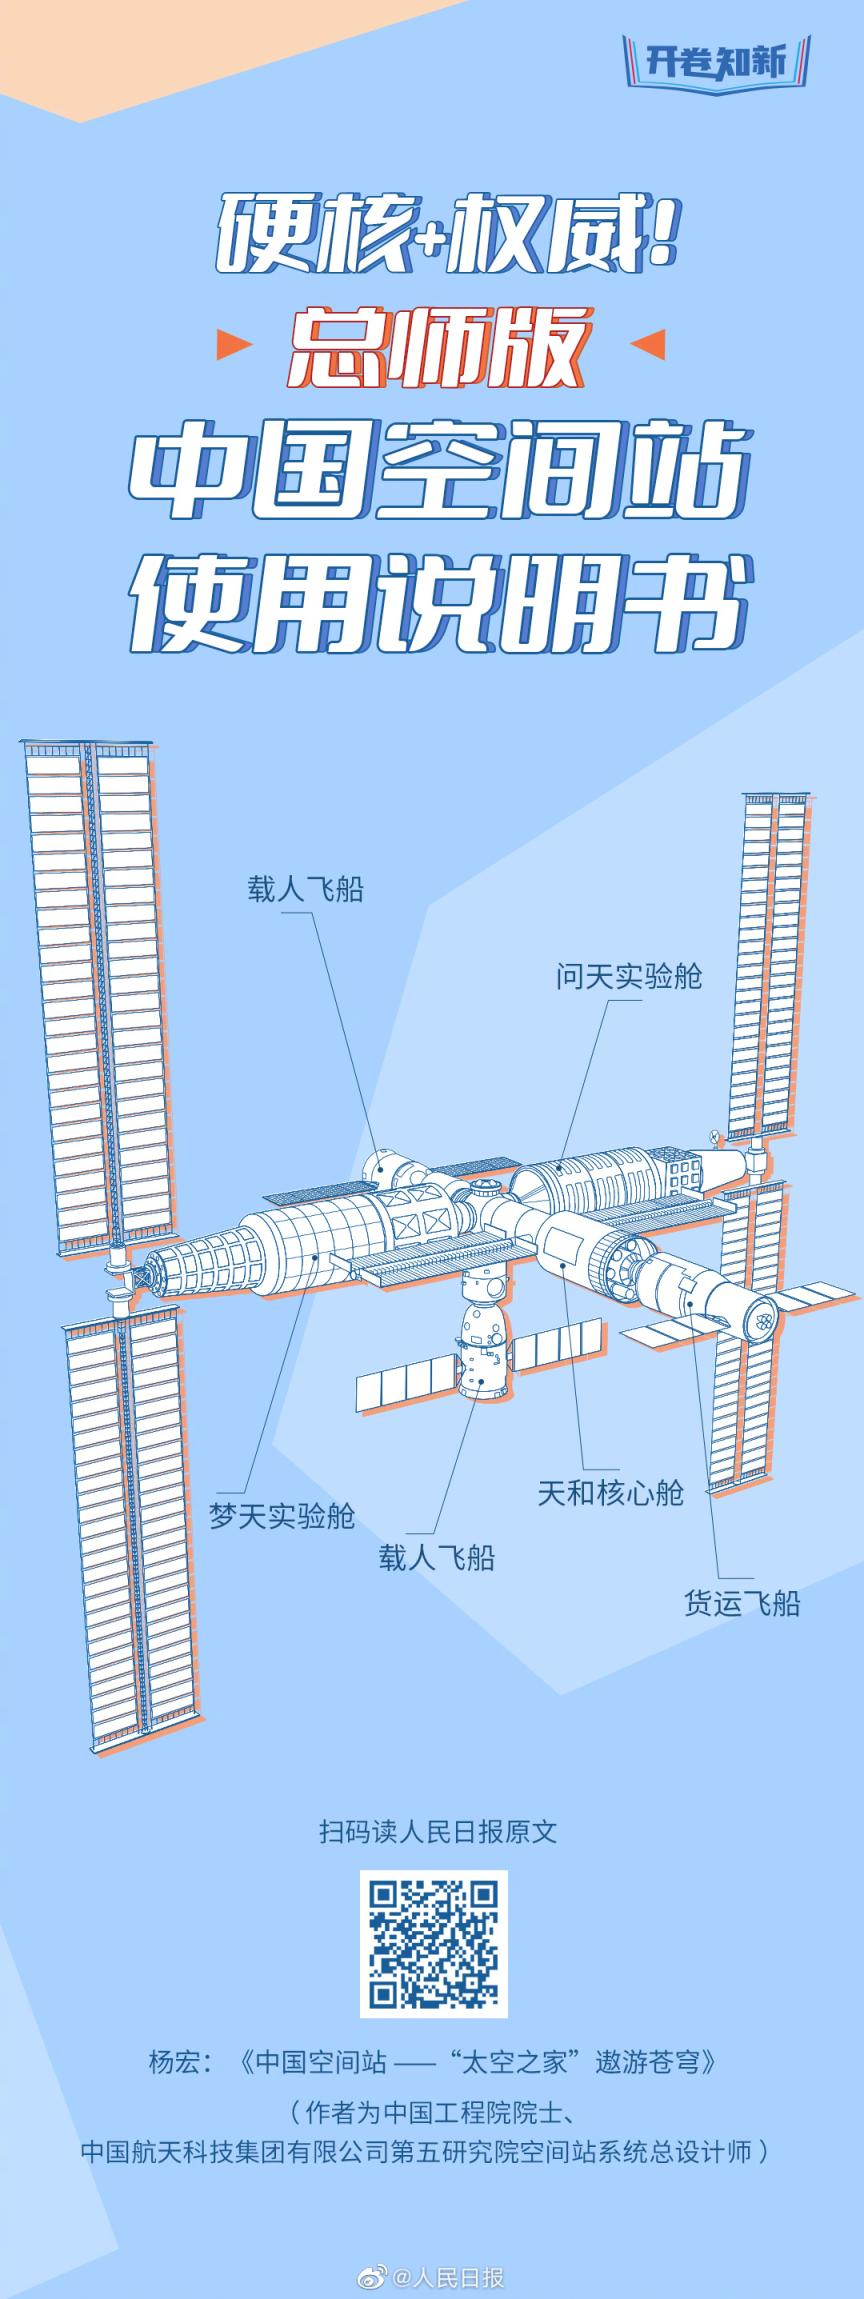 一图了解中国空间站图片